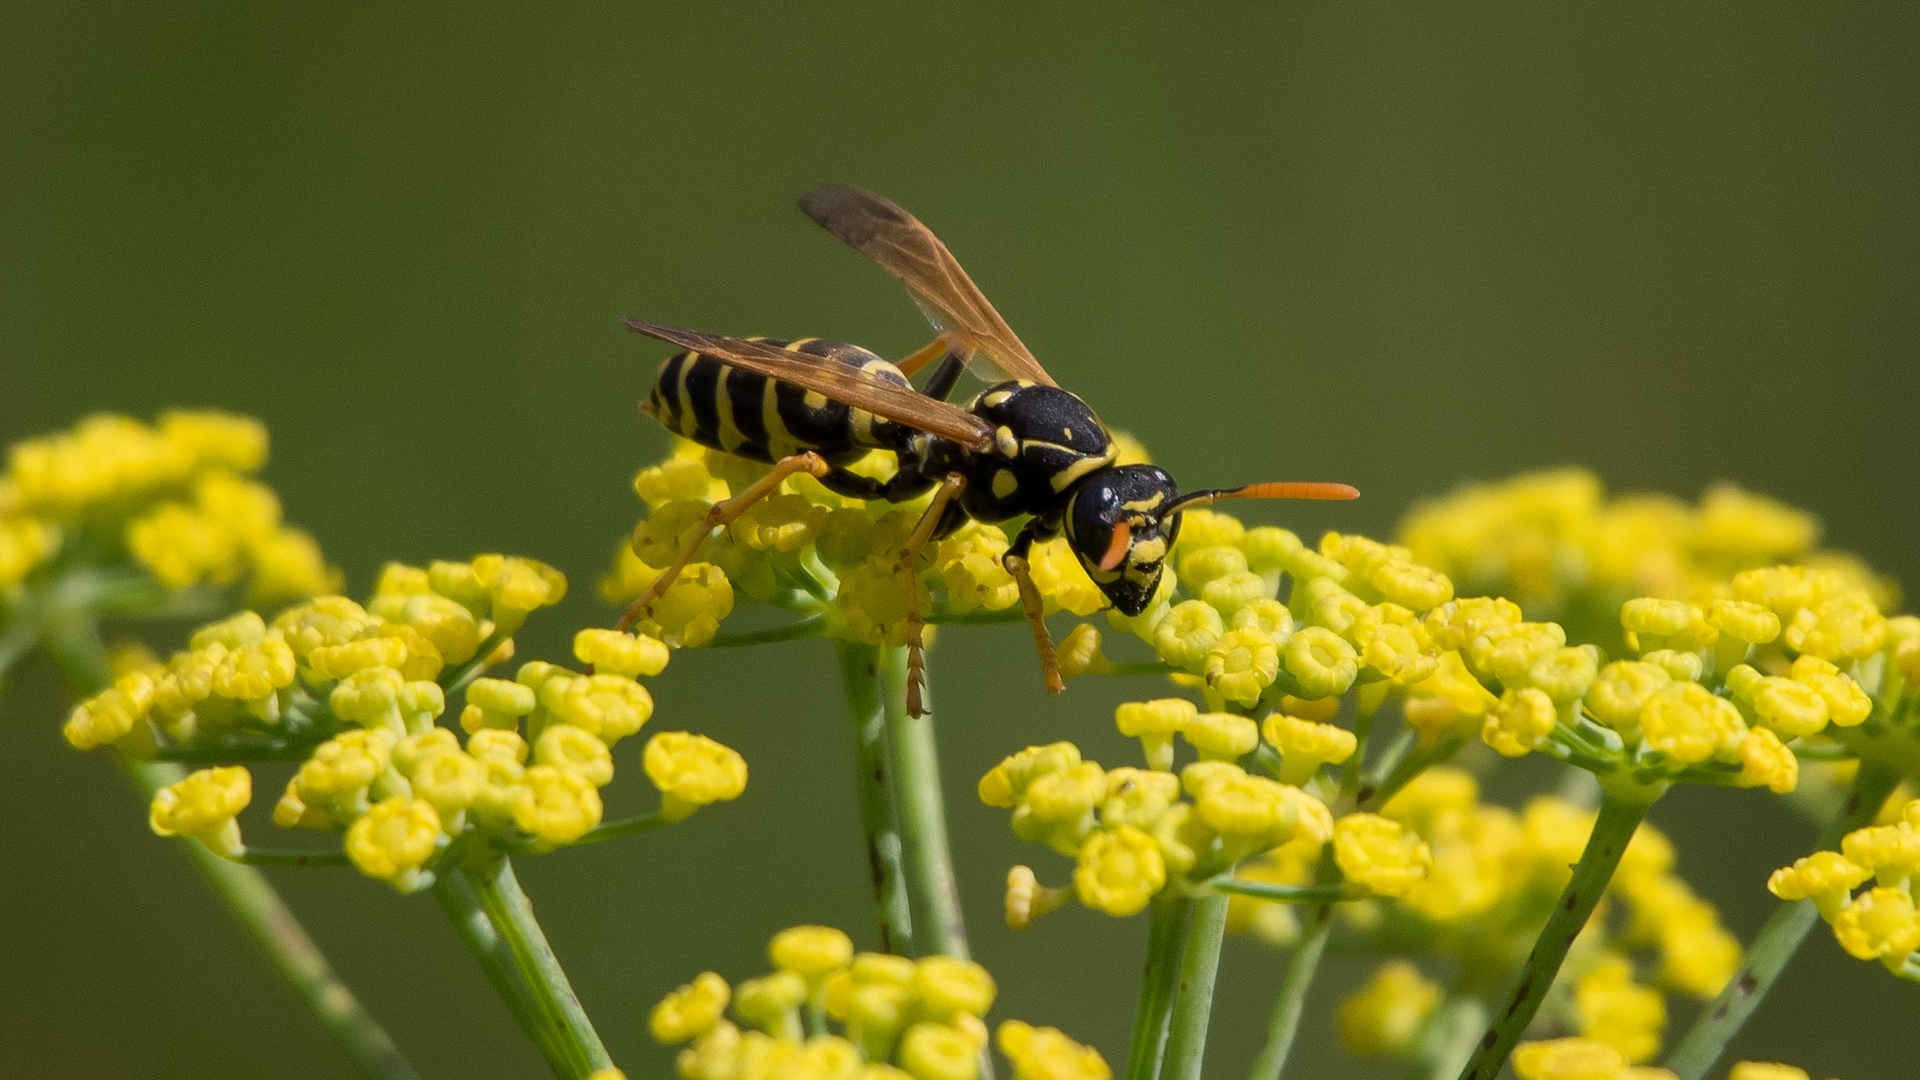 Wespenstiche behandeln: Was tun beim Wespenstich?